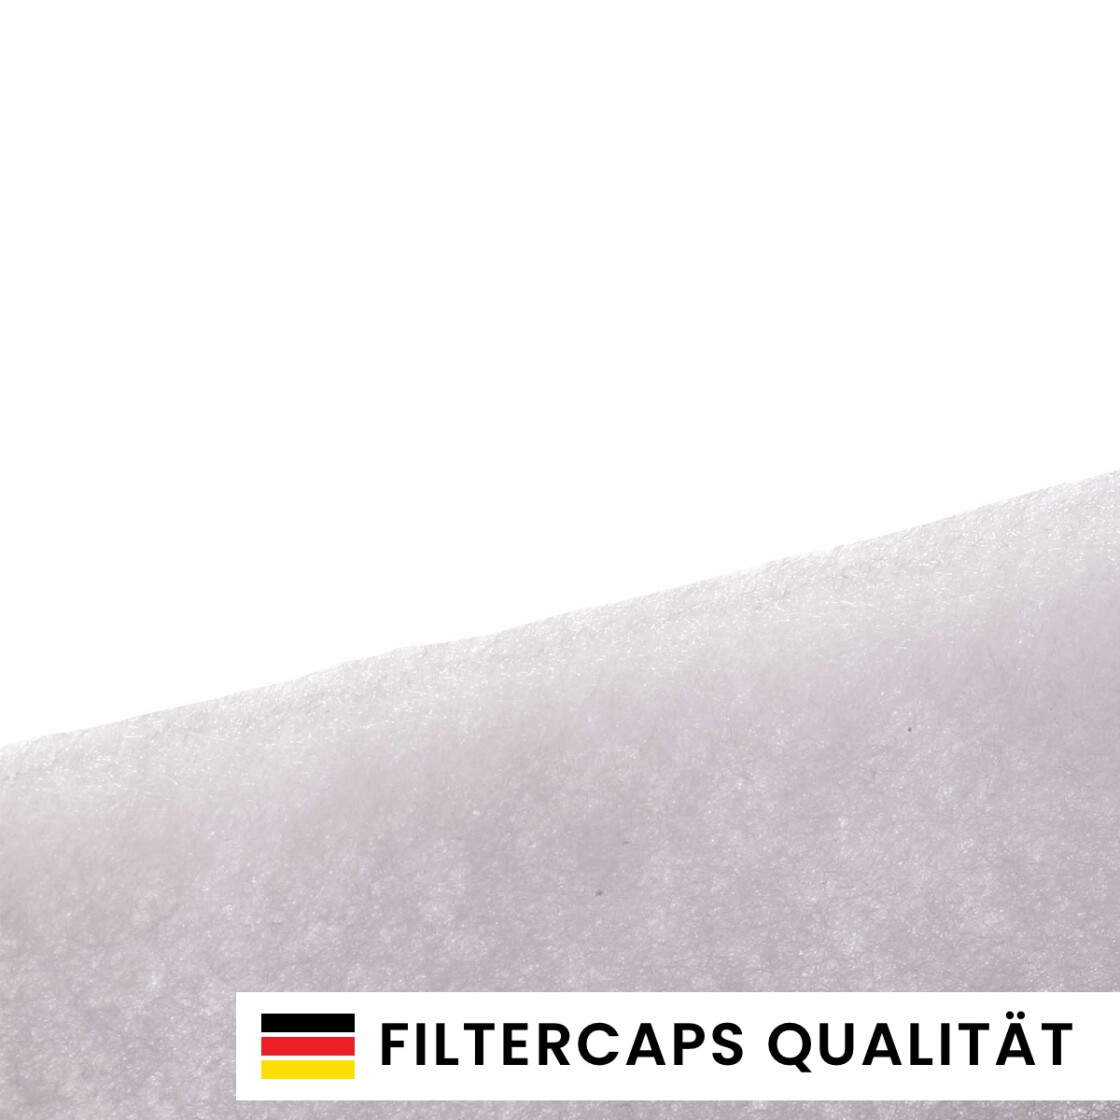 Rundfilter 10x G4 aus Filtermatte für Abluftventile und dezentrale